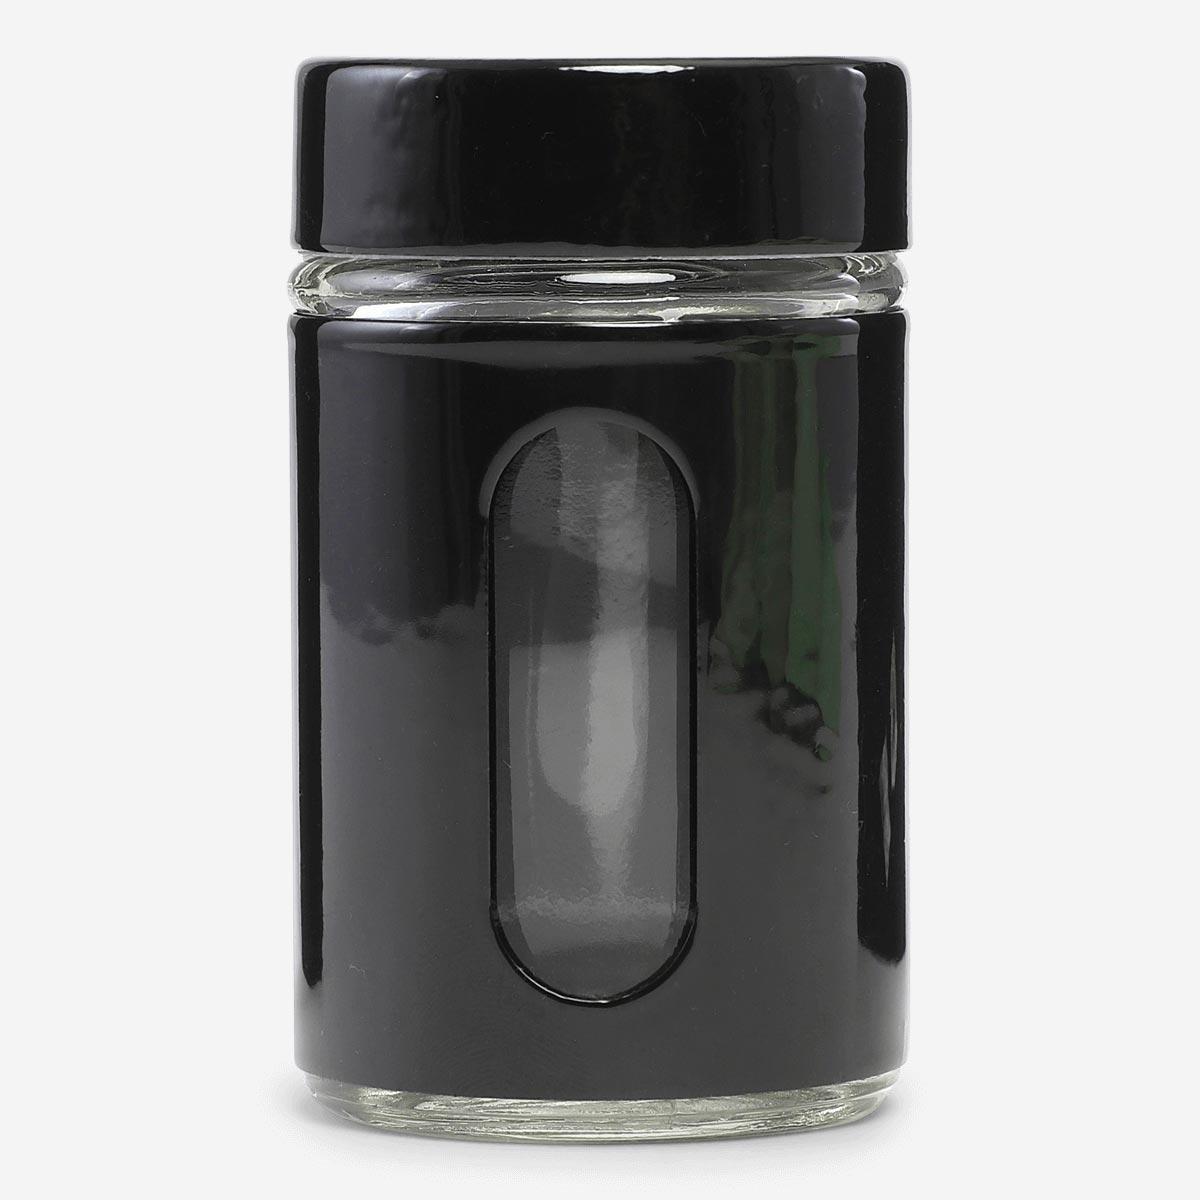 Black pepper shaker